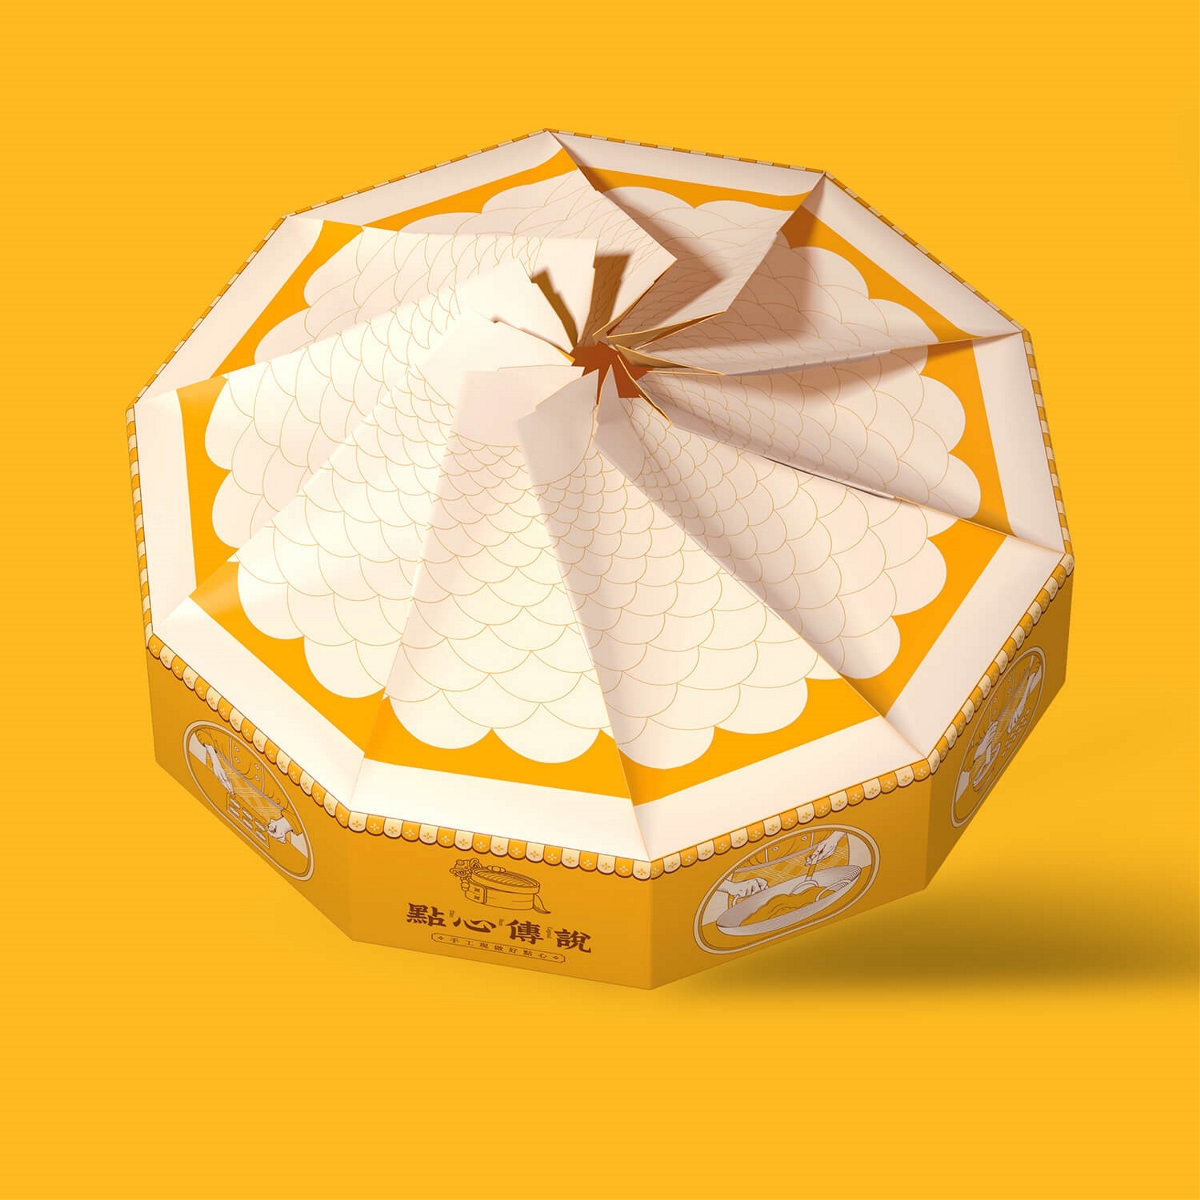 包装即是卖点-蛋黄酥包装结构创新整出大卖点 |厚启